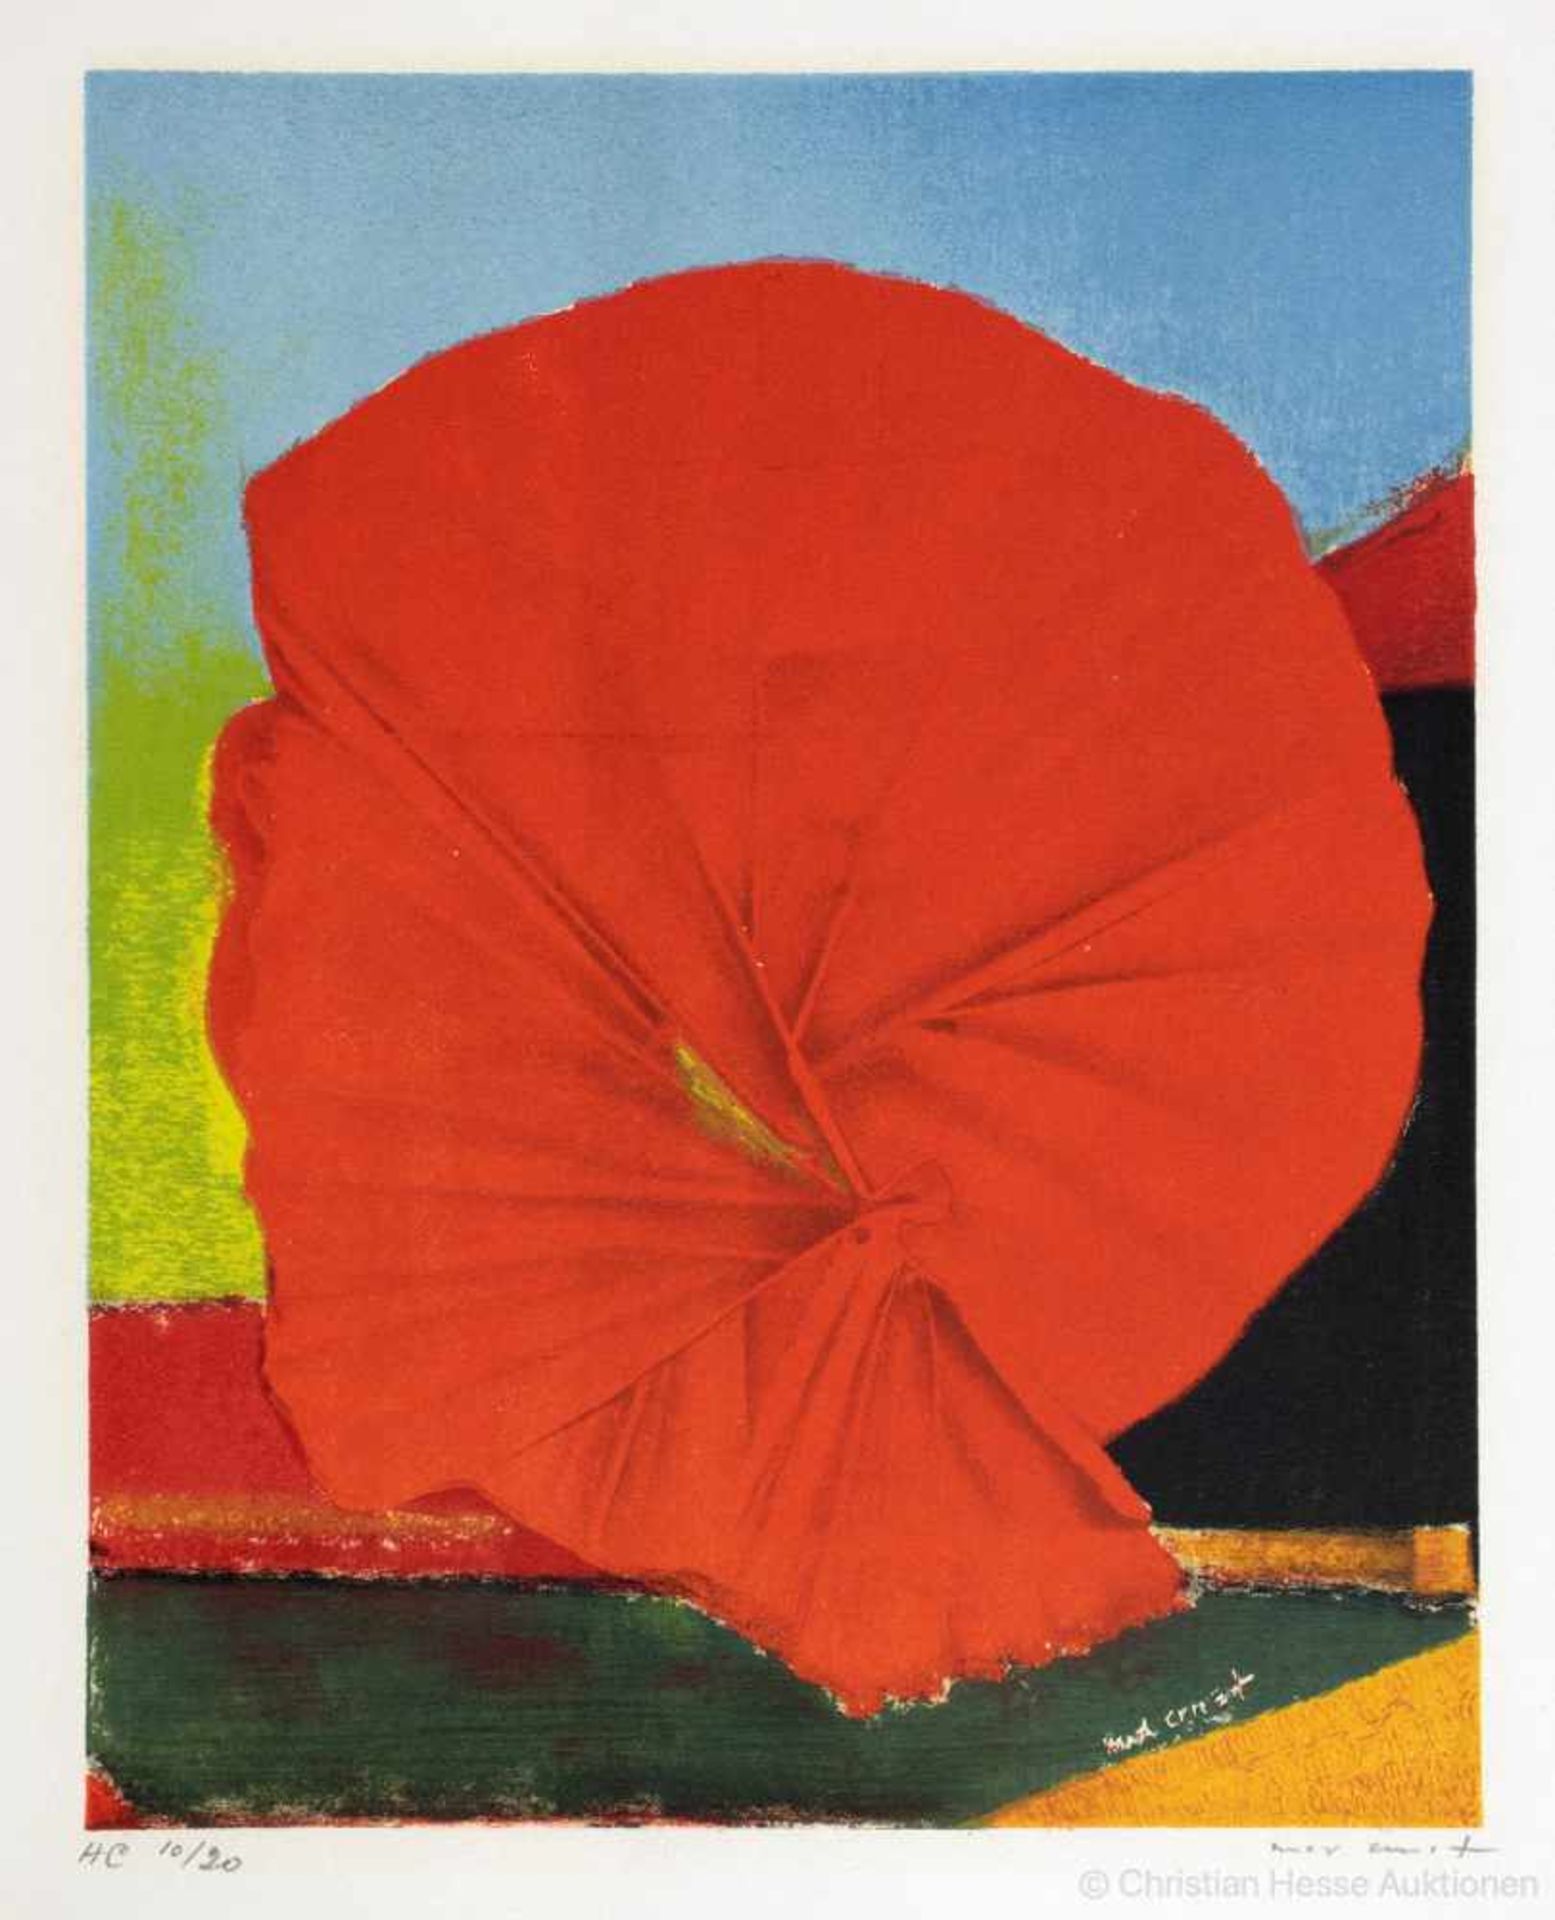 Max Ernst. Rote Blume I. Farblithographie. 1960. 24 : 19 cm (36 : 27 cm). Signiert und nummeriert.